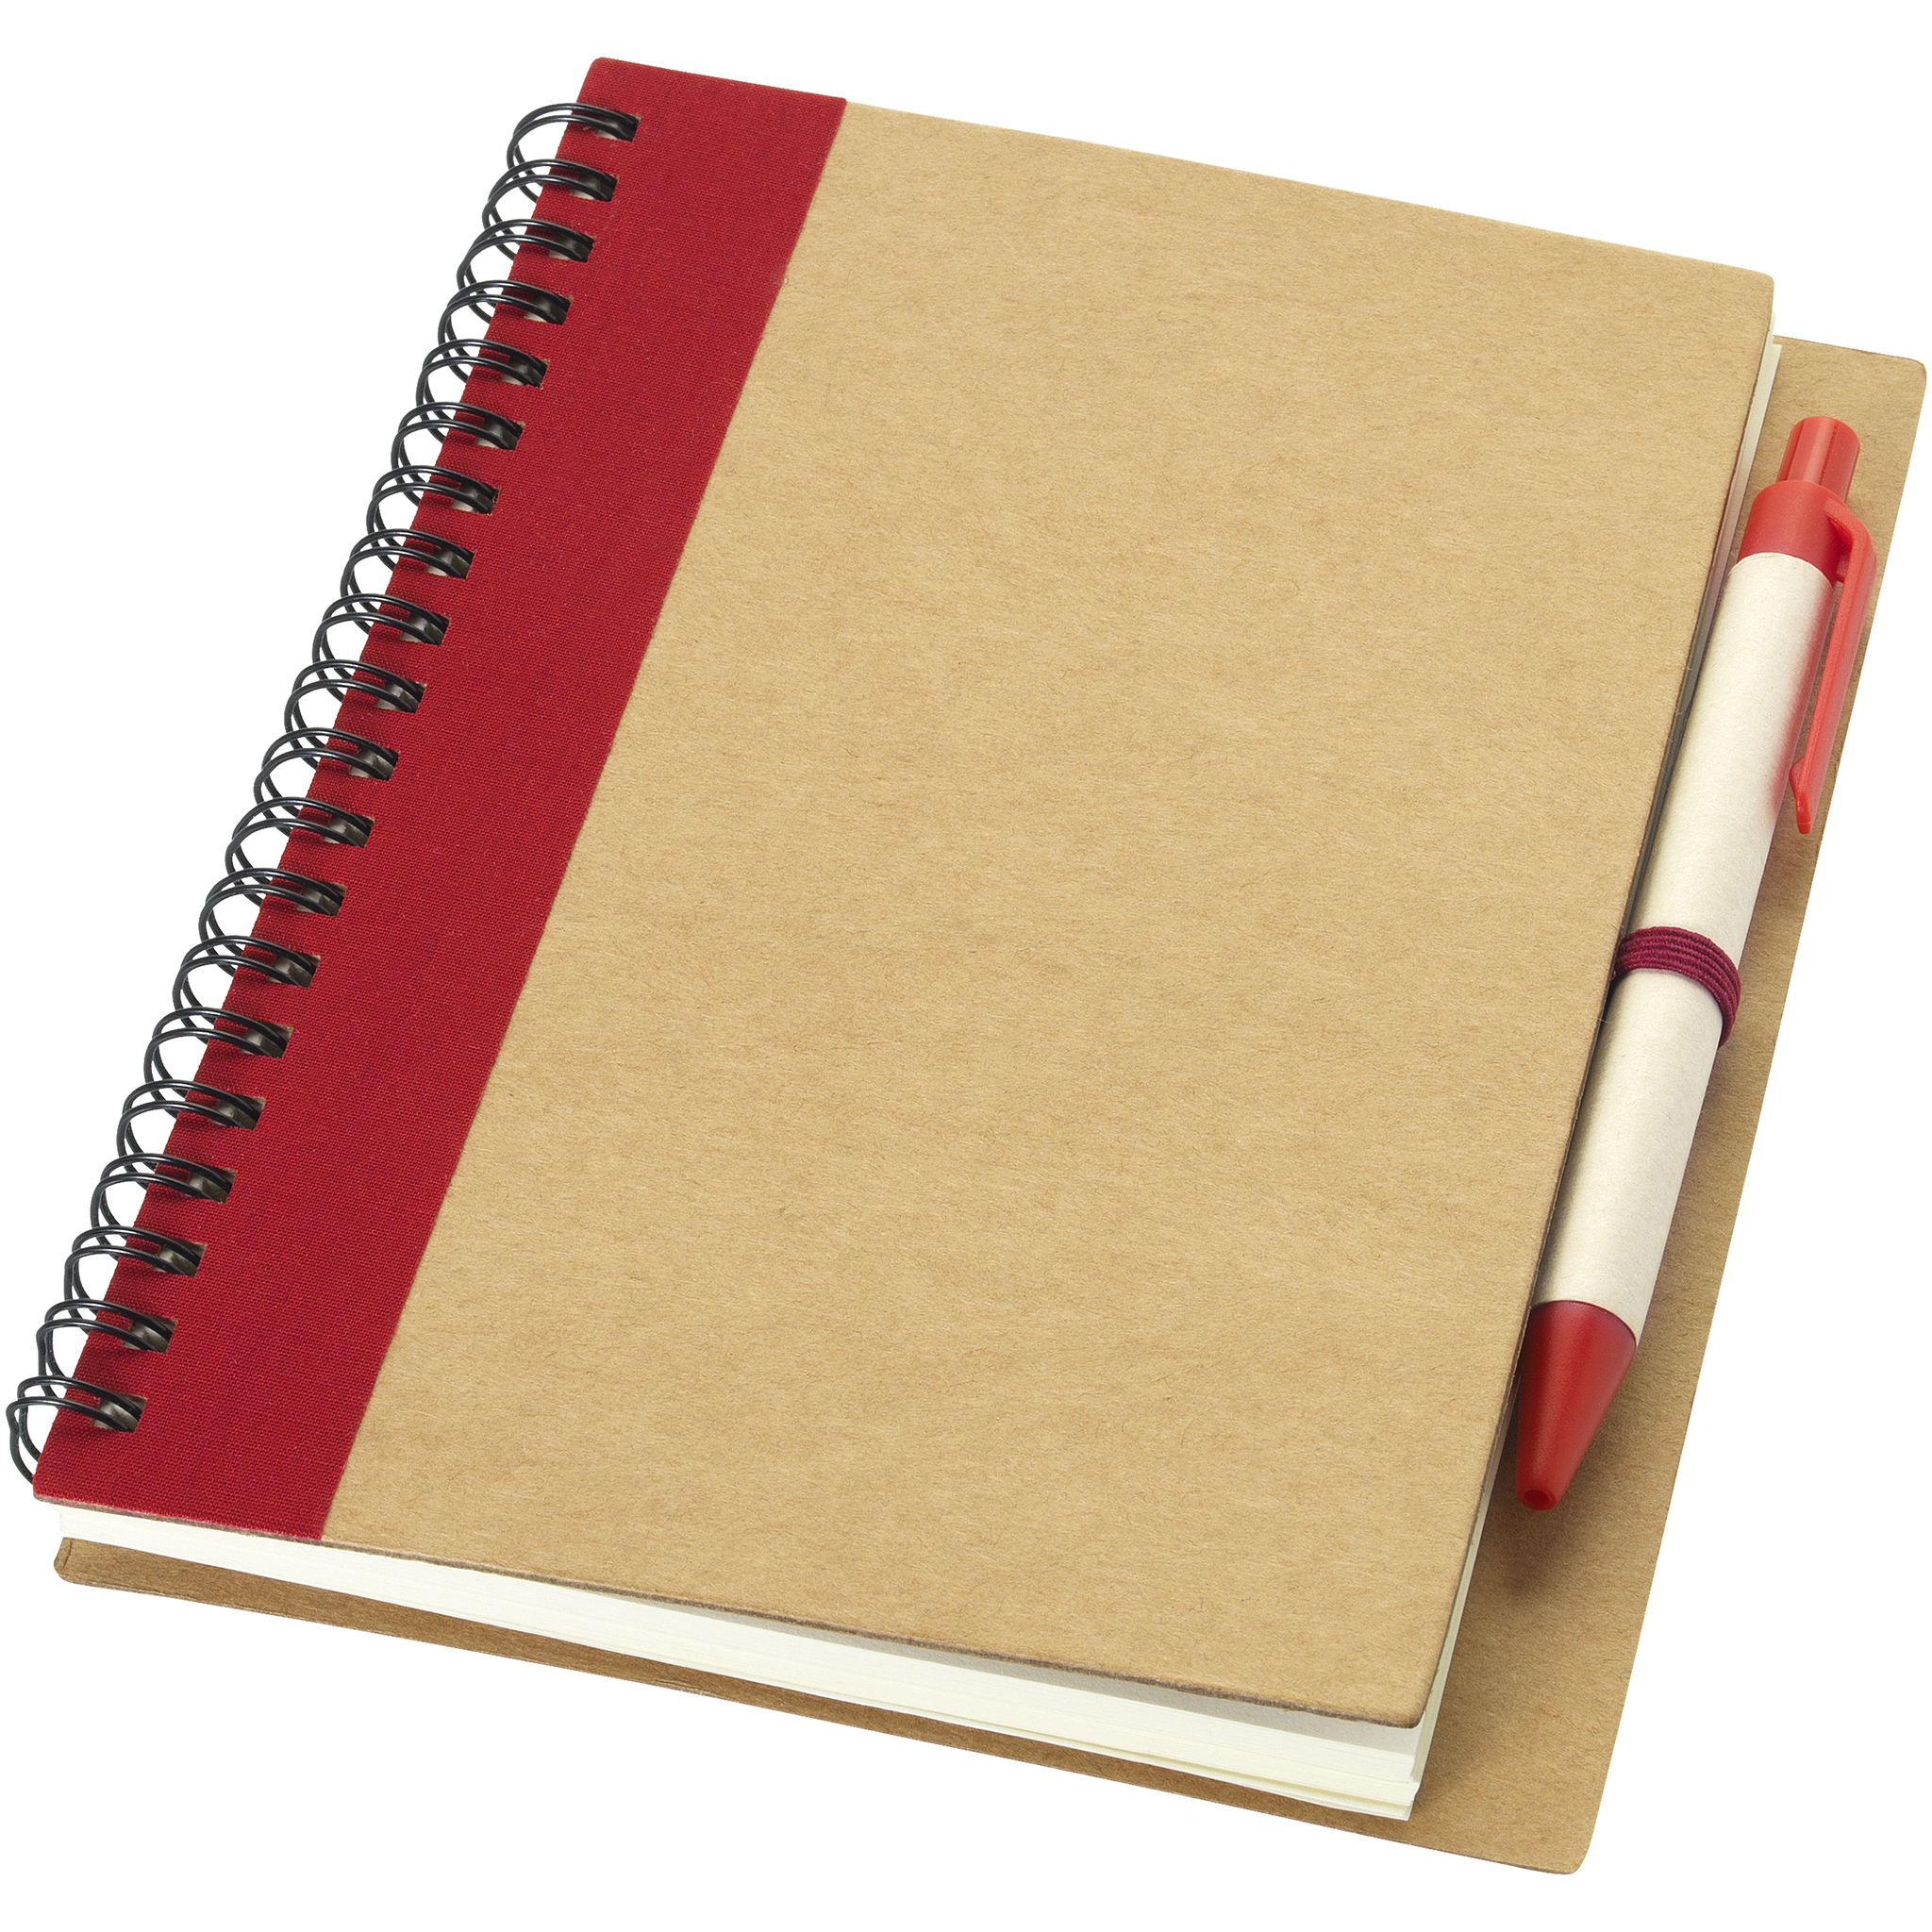 Картинки блокнотиков. Блокнот а6 Priestly с ручкой. Блокнот записная книжка. Блокнот на прозрачном фоне. Красный блокнот и ручка.